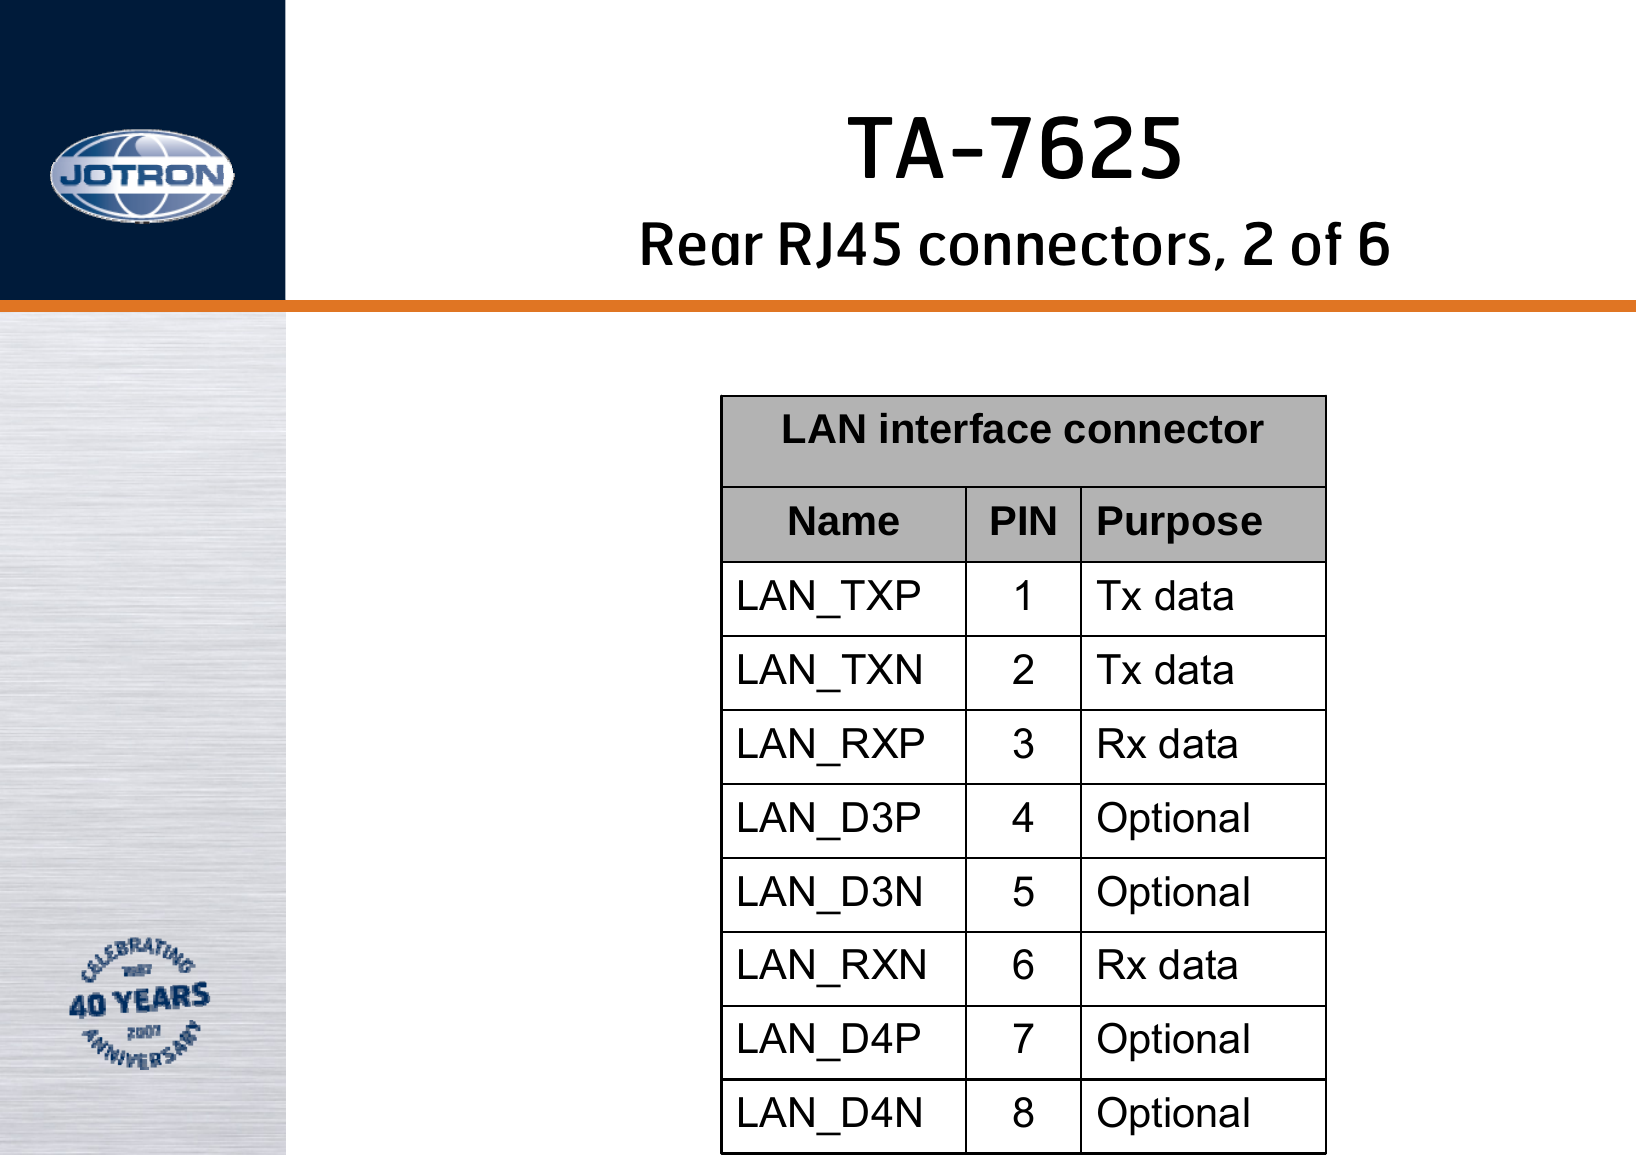 Optional8LAN_D4NOptional7LAN_D4PRx data6LAN_RXNOptional5LAN_D3NOptional4LAN_D3PRx data3LAN_RXPTx data2LAN_TXNTx data1LAN_TXPPurposePINNameLAN interface connectorRear RJ45 connectors, 2 of 6TA-7625